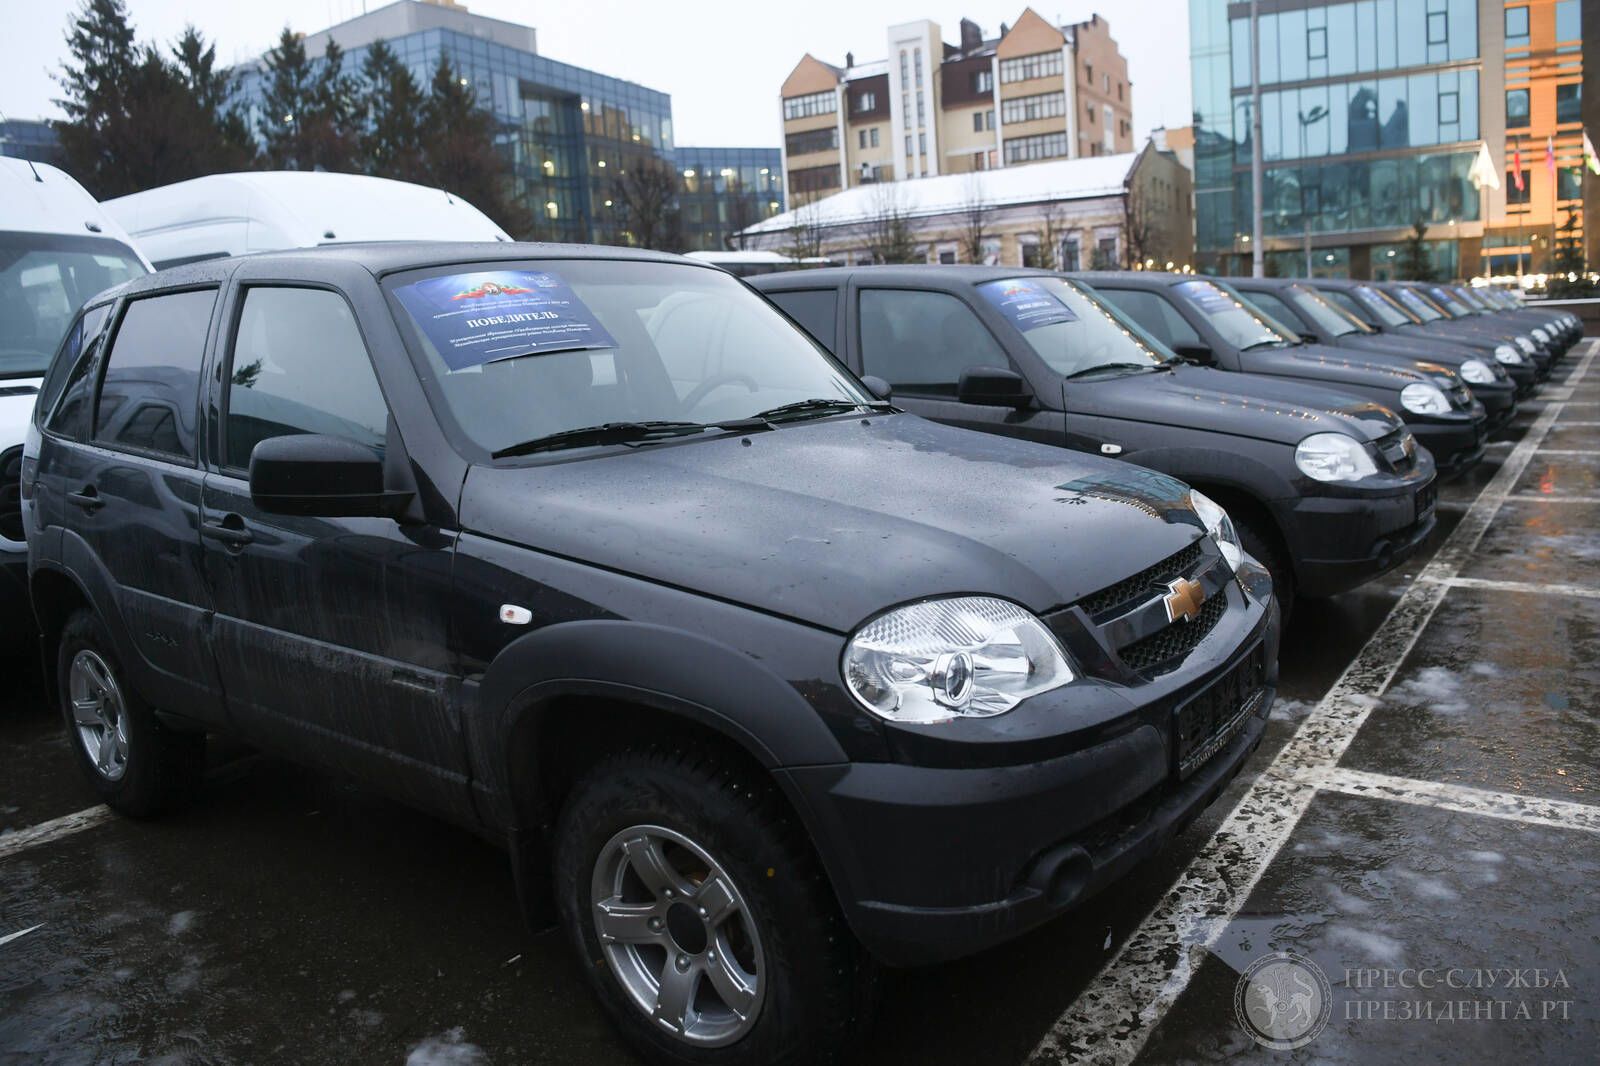 Главы трех сельских поселений Чистопольского района получили новые автомобили